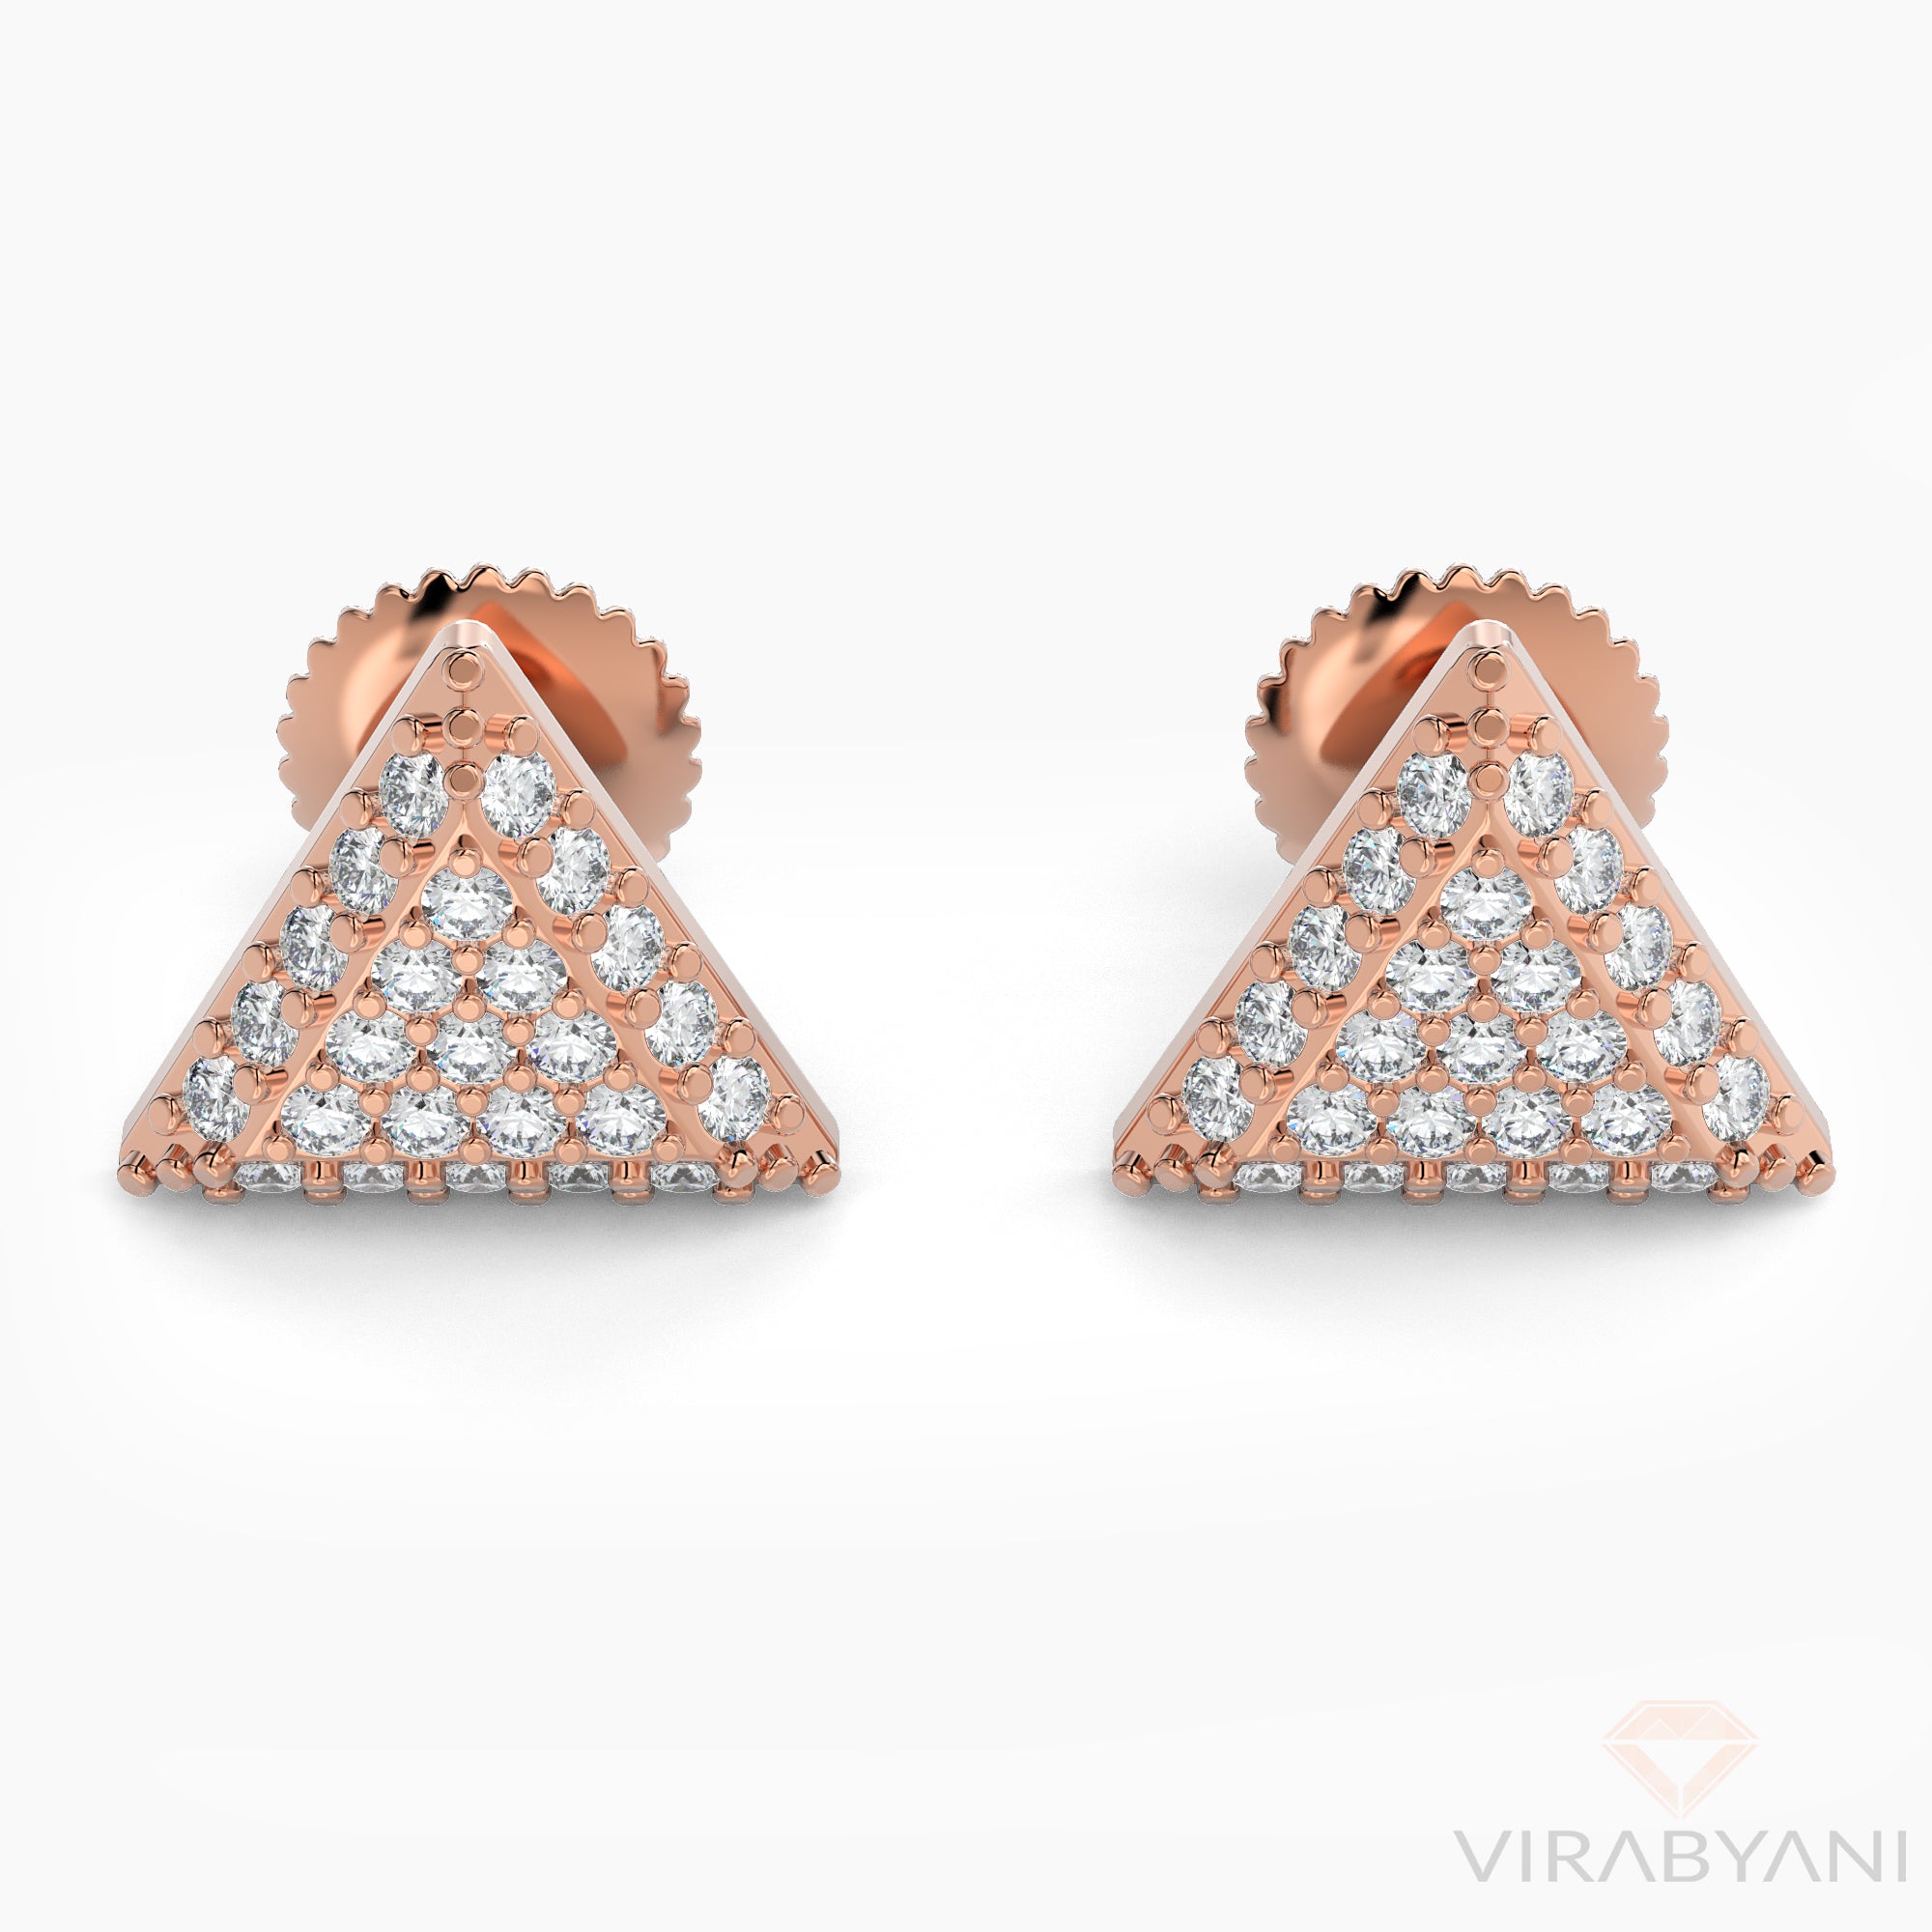 Triangle Shaped AMoré Pavé Earrings With 0.40 ct. Diamonds